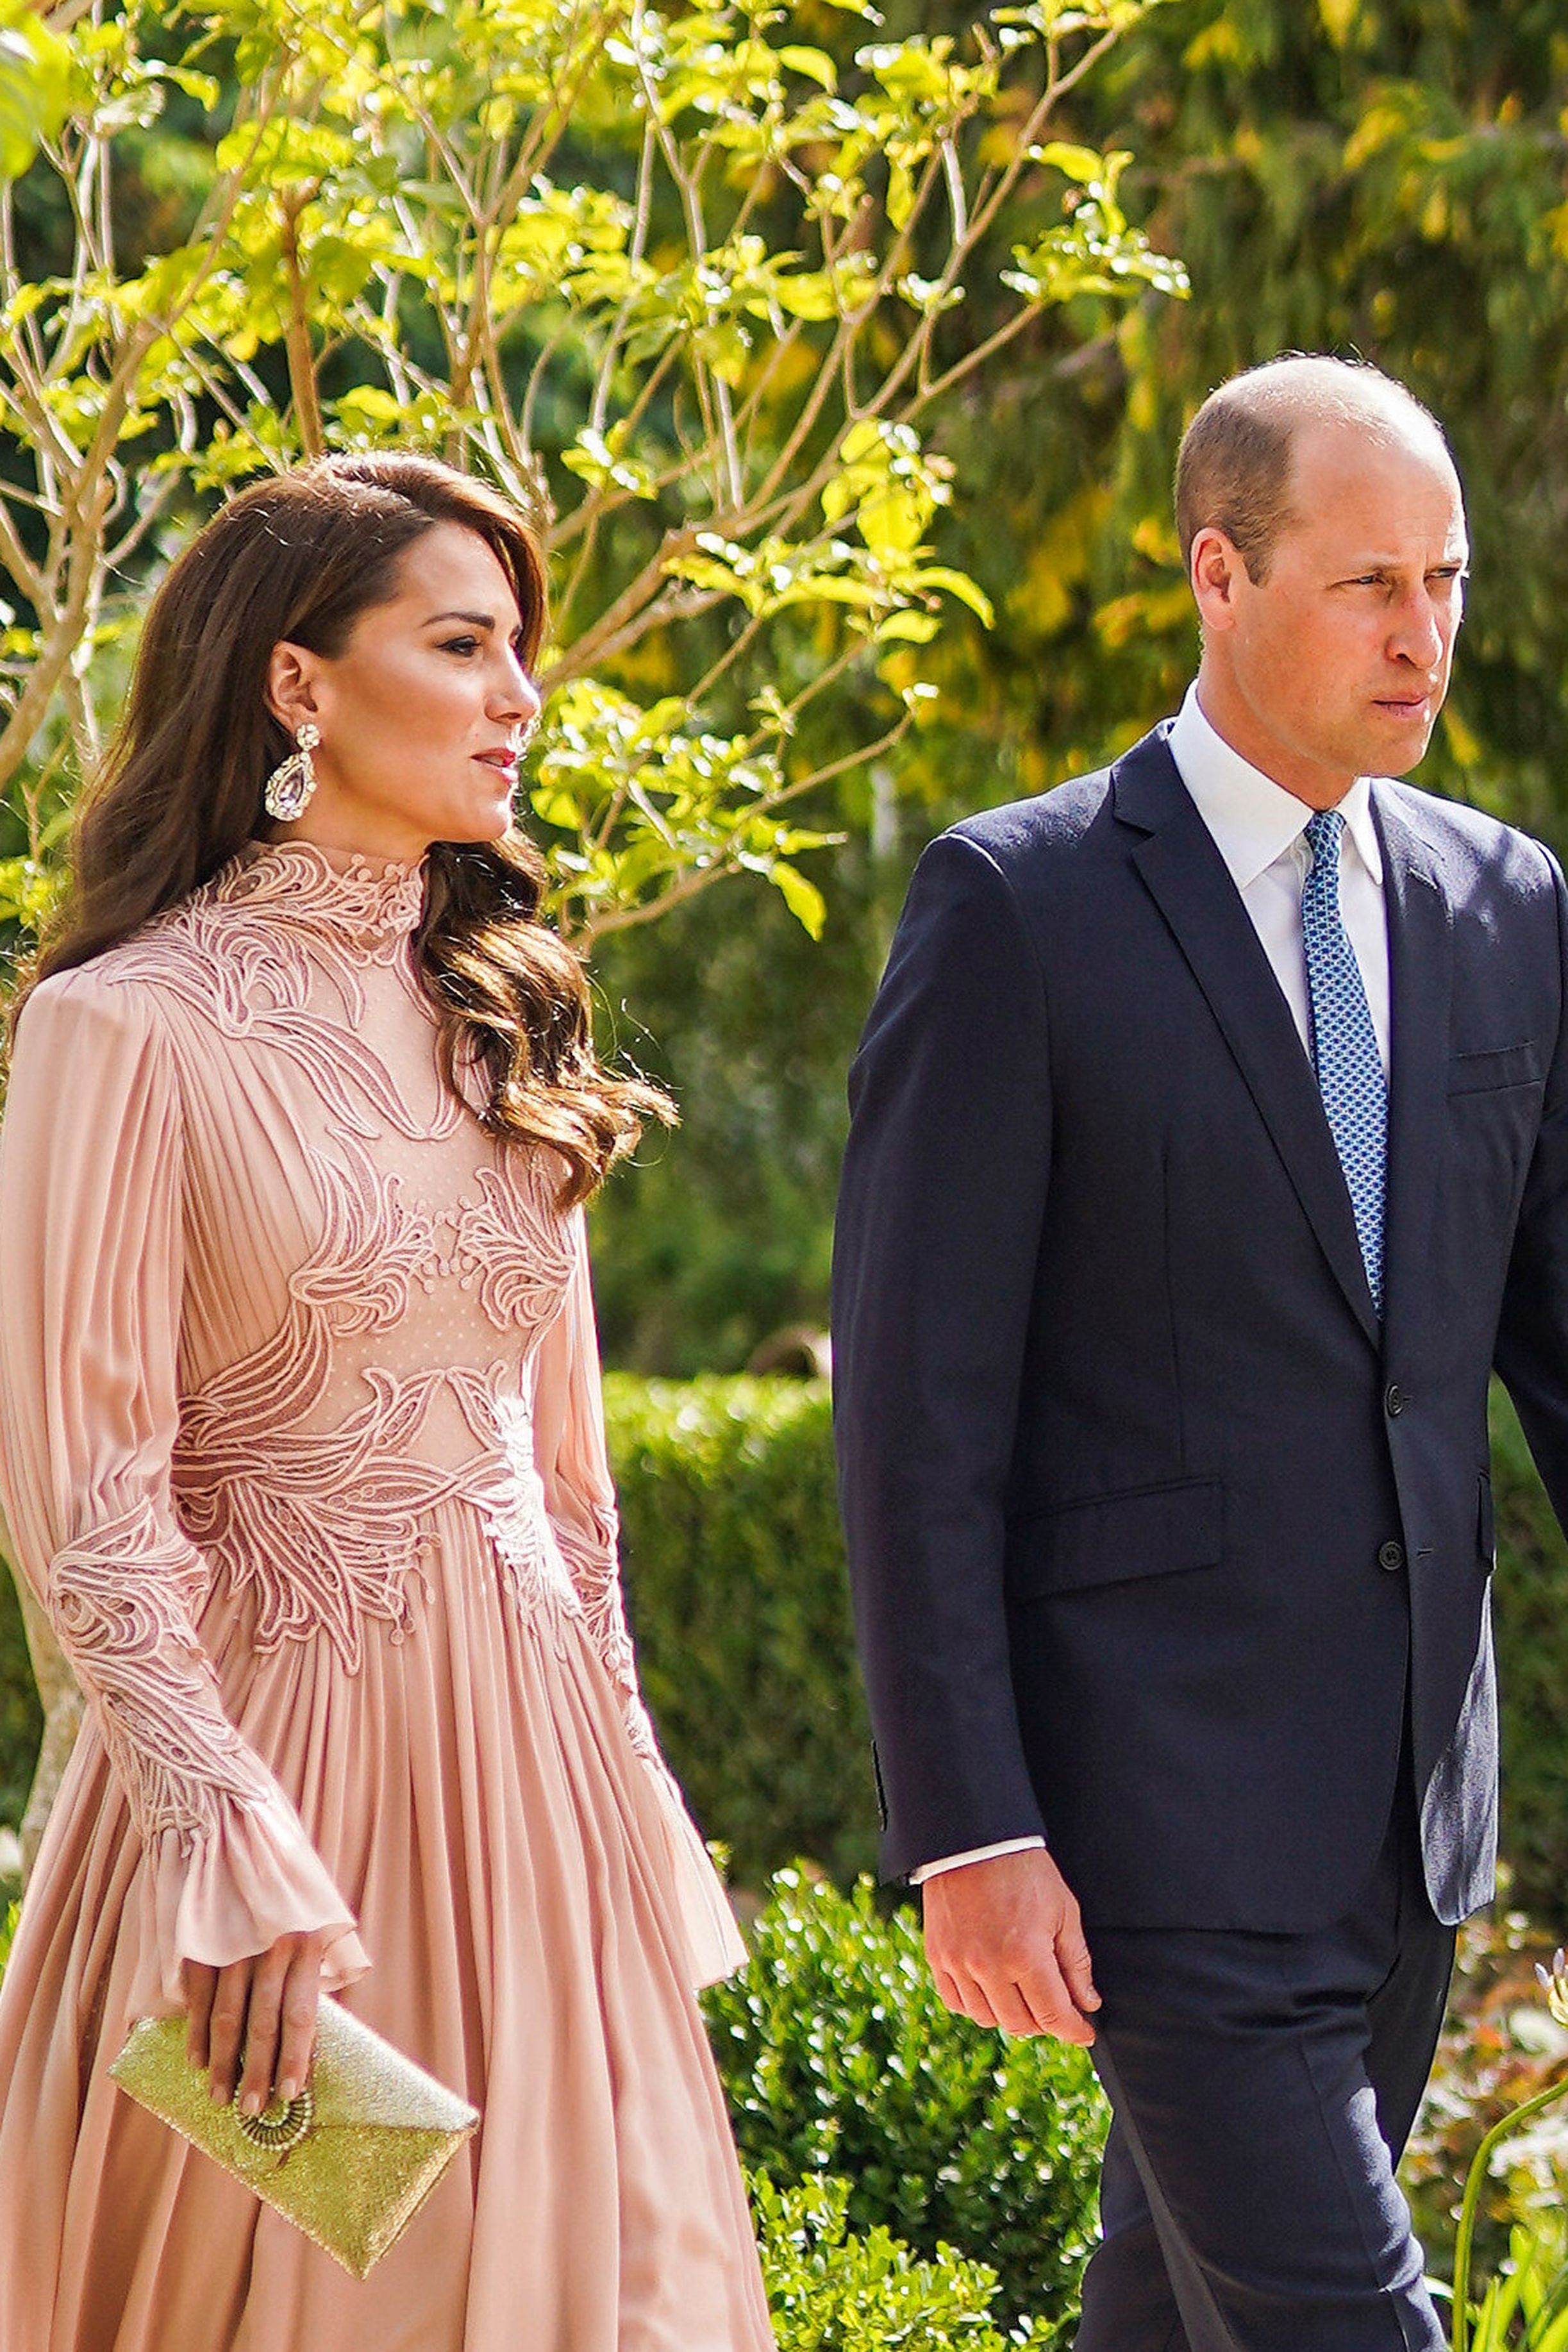 Kate Middleton kao gošća na vjenčanju oduševila u elegantnoj ružičastoj haljini s potpisom Elie Saaba